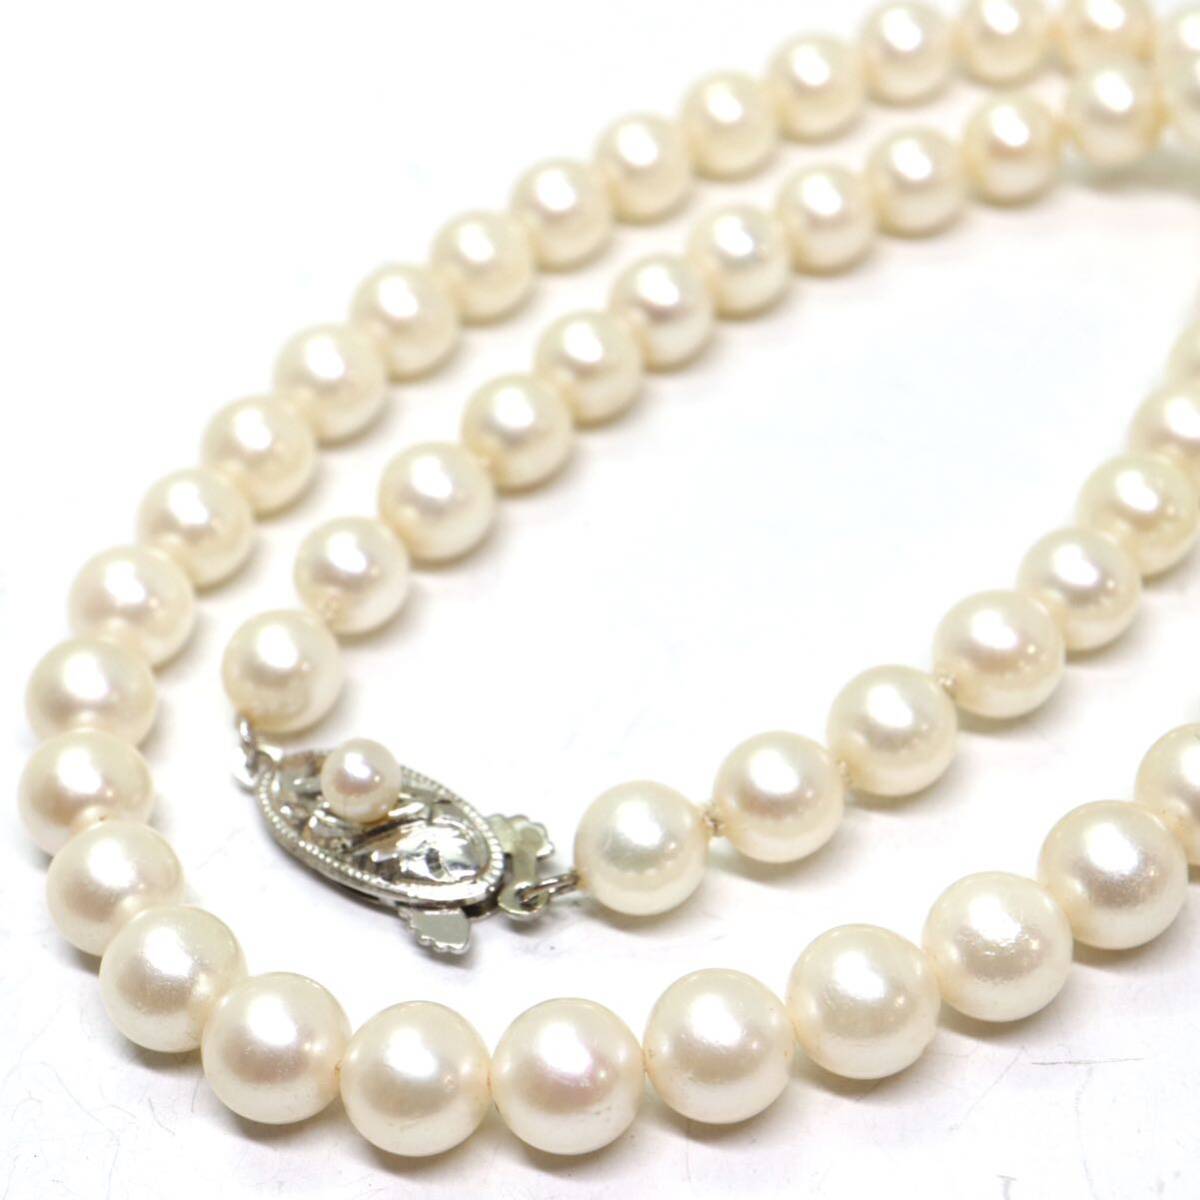 《アコヤ本真珠ネックレス》M 約6.0-6.5mm珠 20.8g 約38cm pearl necklace ジュエリー jewelry DC0/DC0